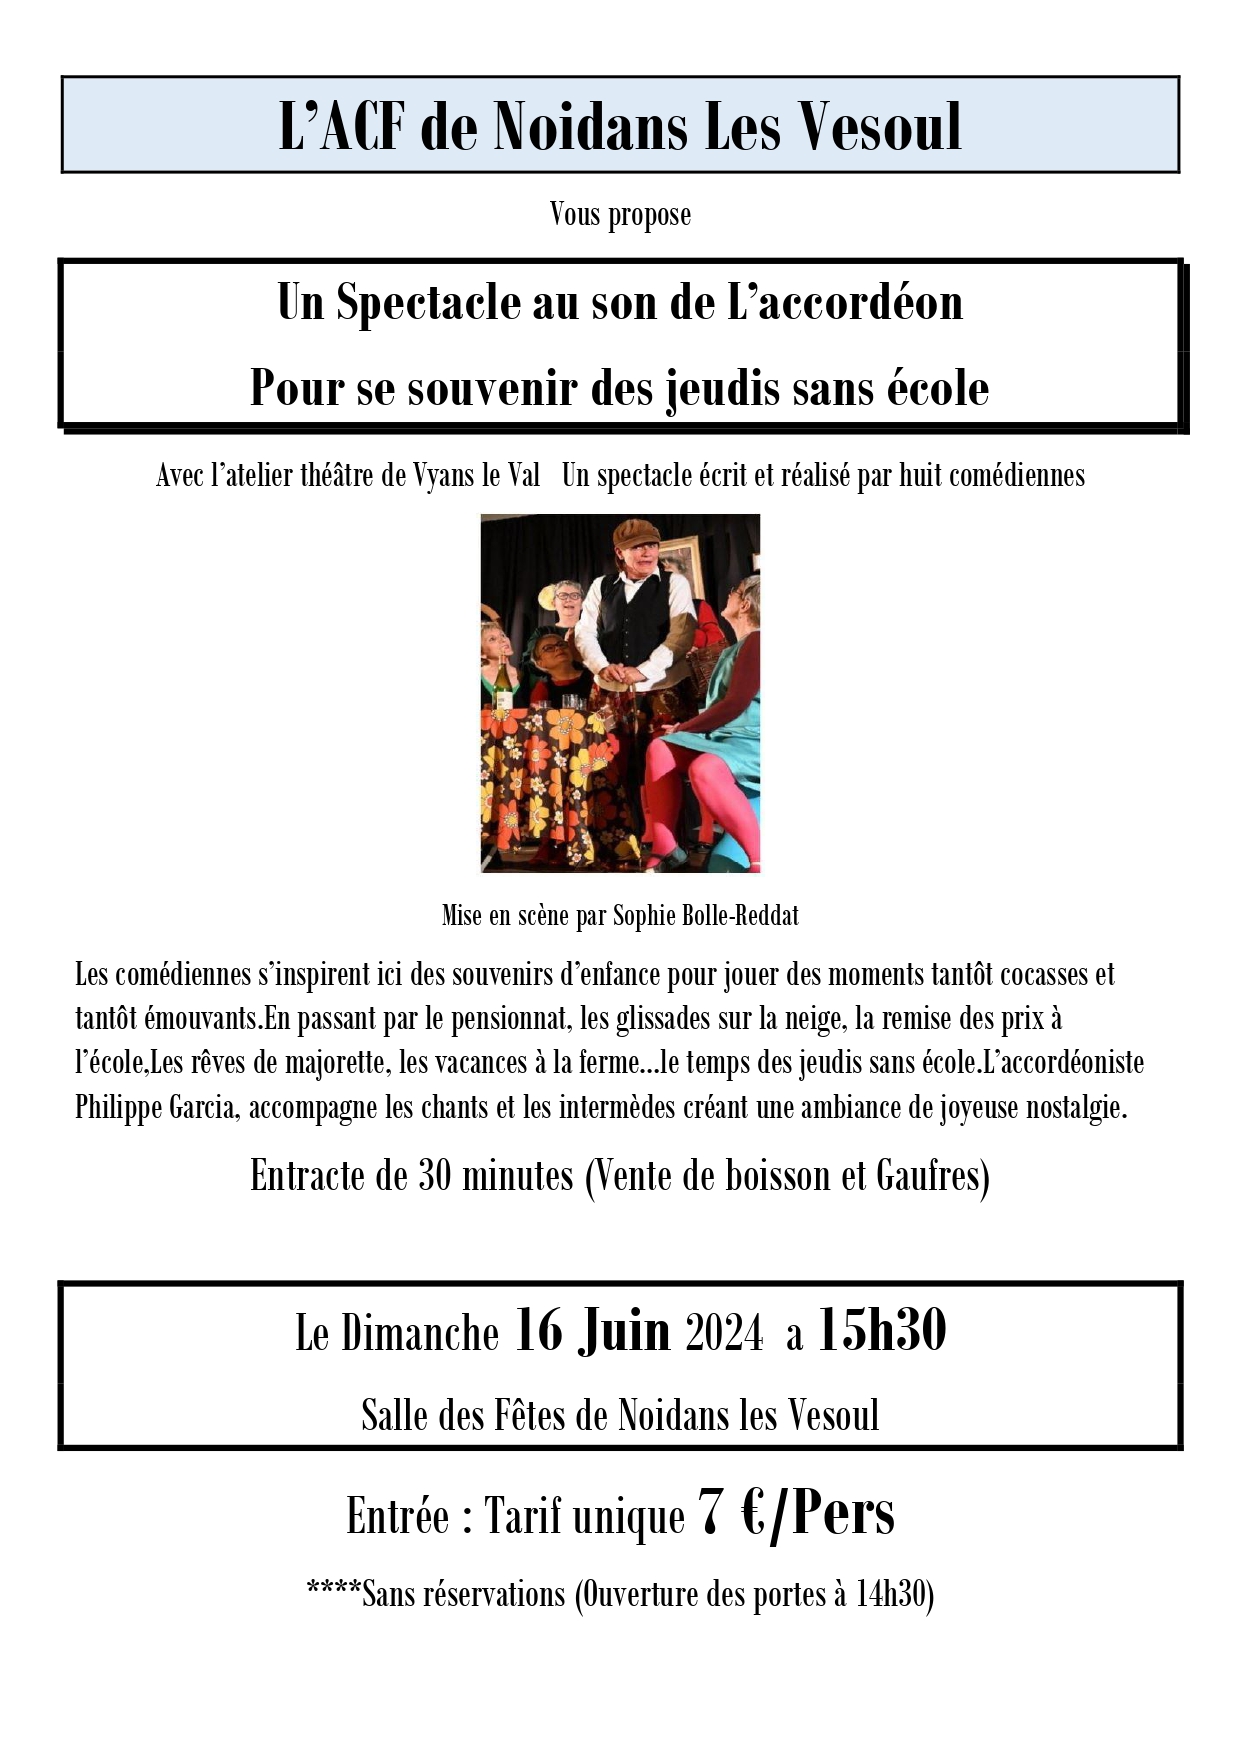 Spectacle au son de L' accordéon le dimanche 16 juin 2024 à la salle des fêtes de Noidans-lès-Vesoul